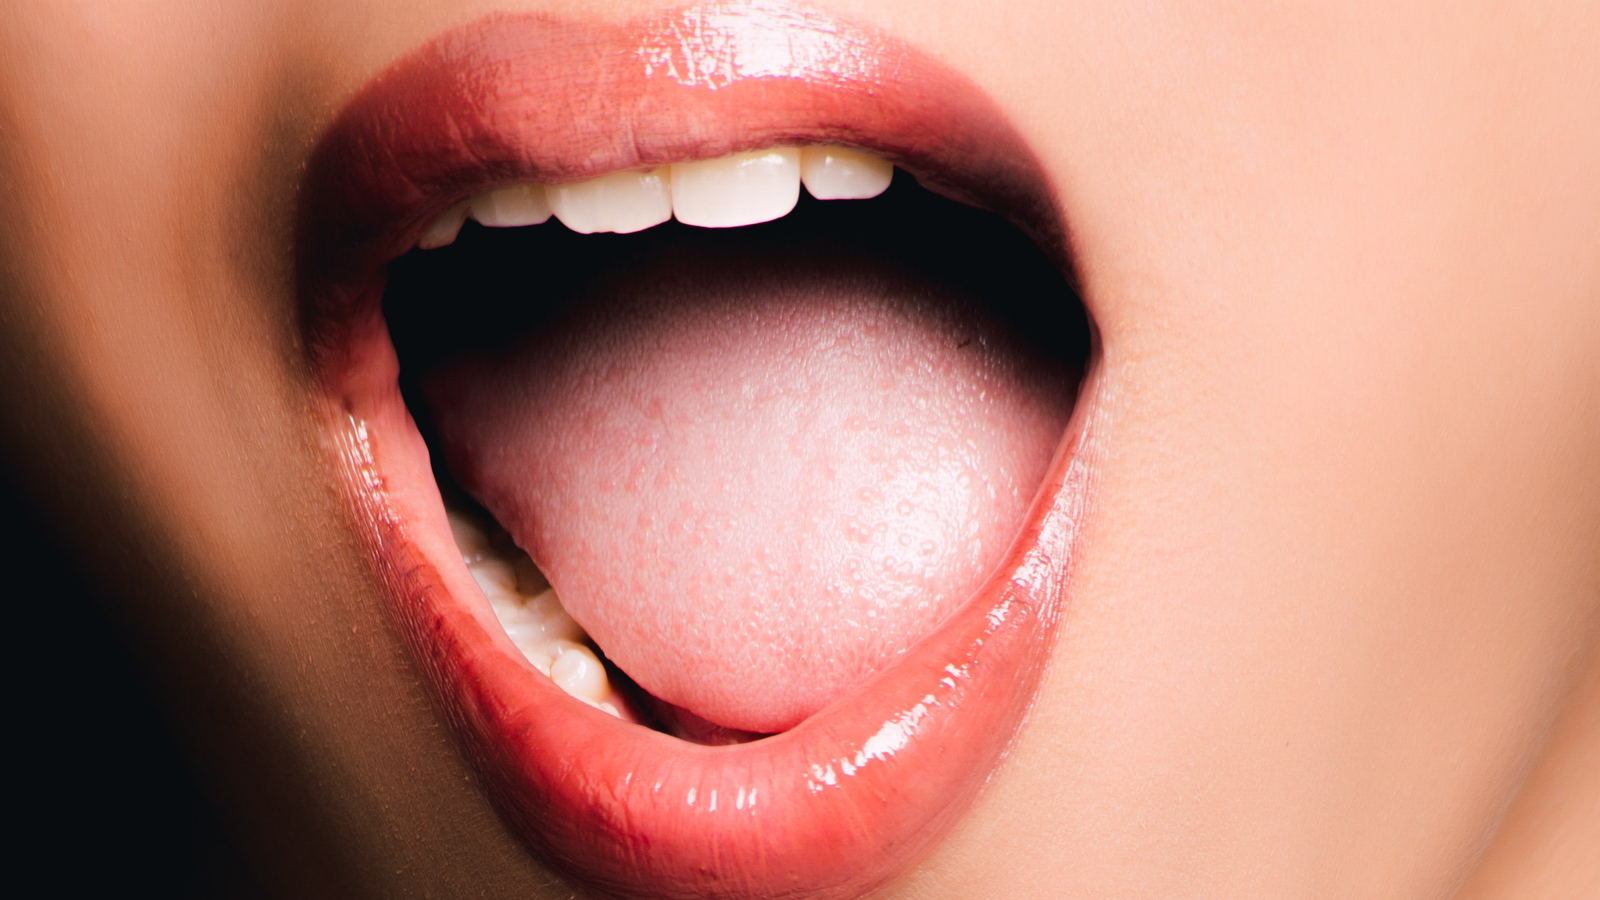 Ung thư lưỡi là bệnh thường gặp nhất ở vùng miệng và lưỡi, có các biểu hiện giống với nhiệt miệng nên nhiều người chủ quan. Căn bệnh này có mức độ nguy hiểm như thế nào, cùng Genvita đi tìm câu trả lời. 